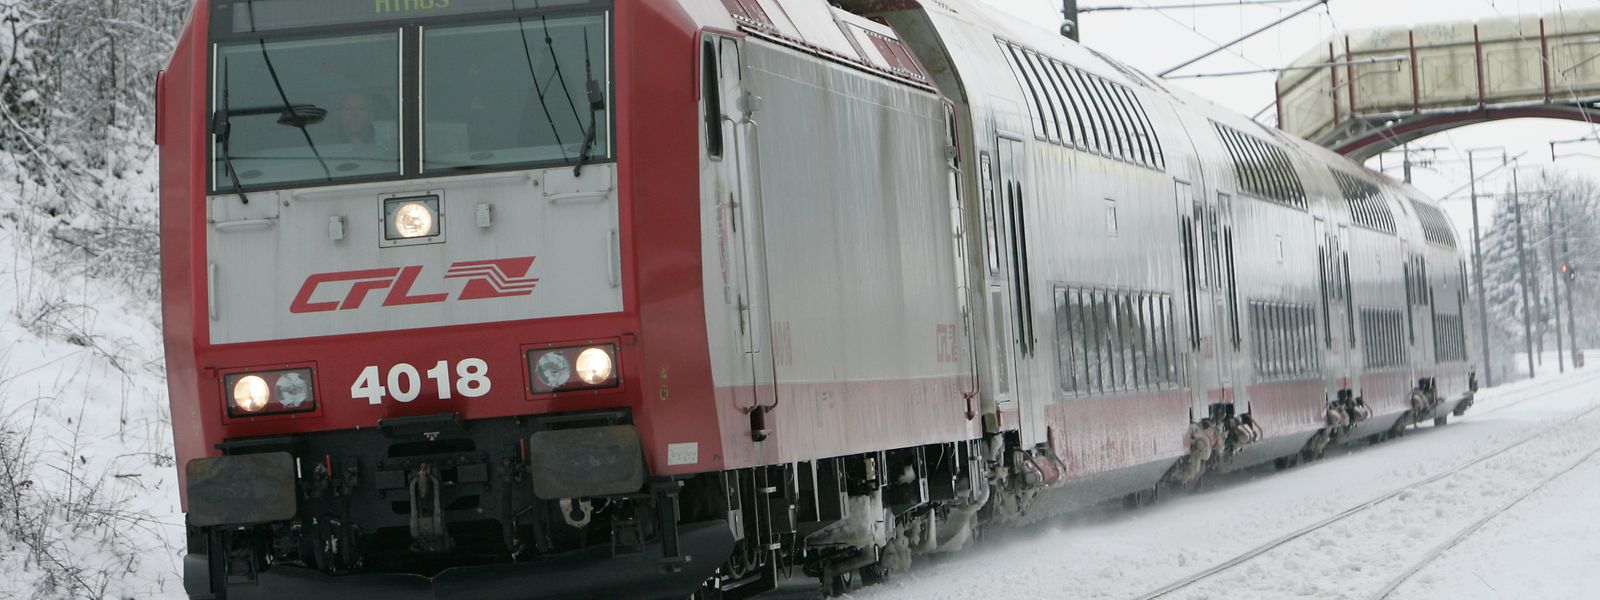 Les locomotives peuvent projeter du sable pour faciliter leur circulation en cas de gel.